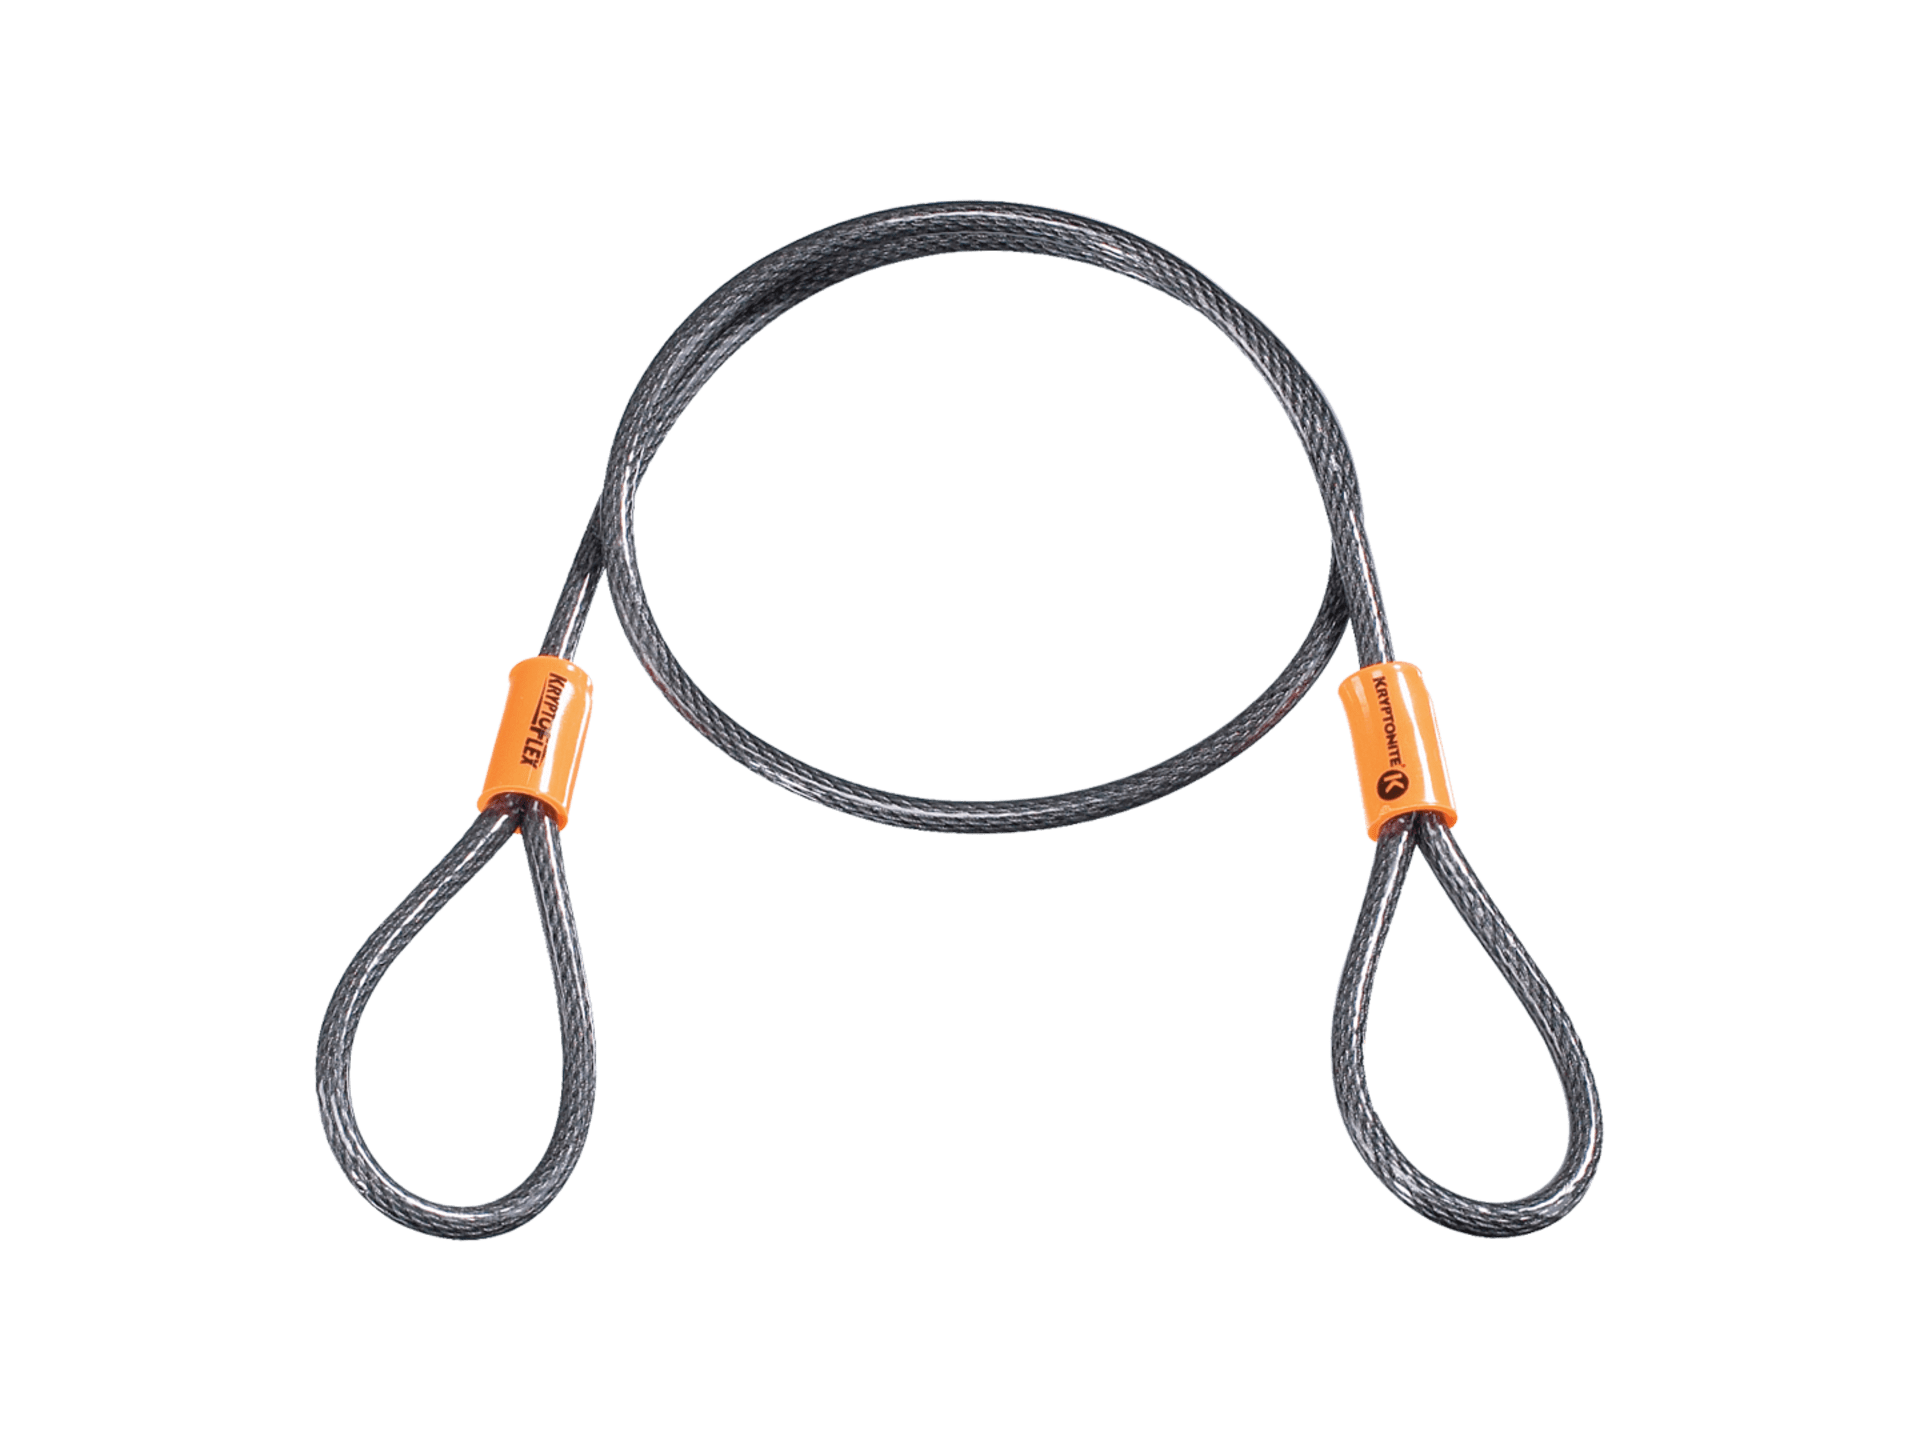 Kryptonite KryptoFlex Double Loop Cable